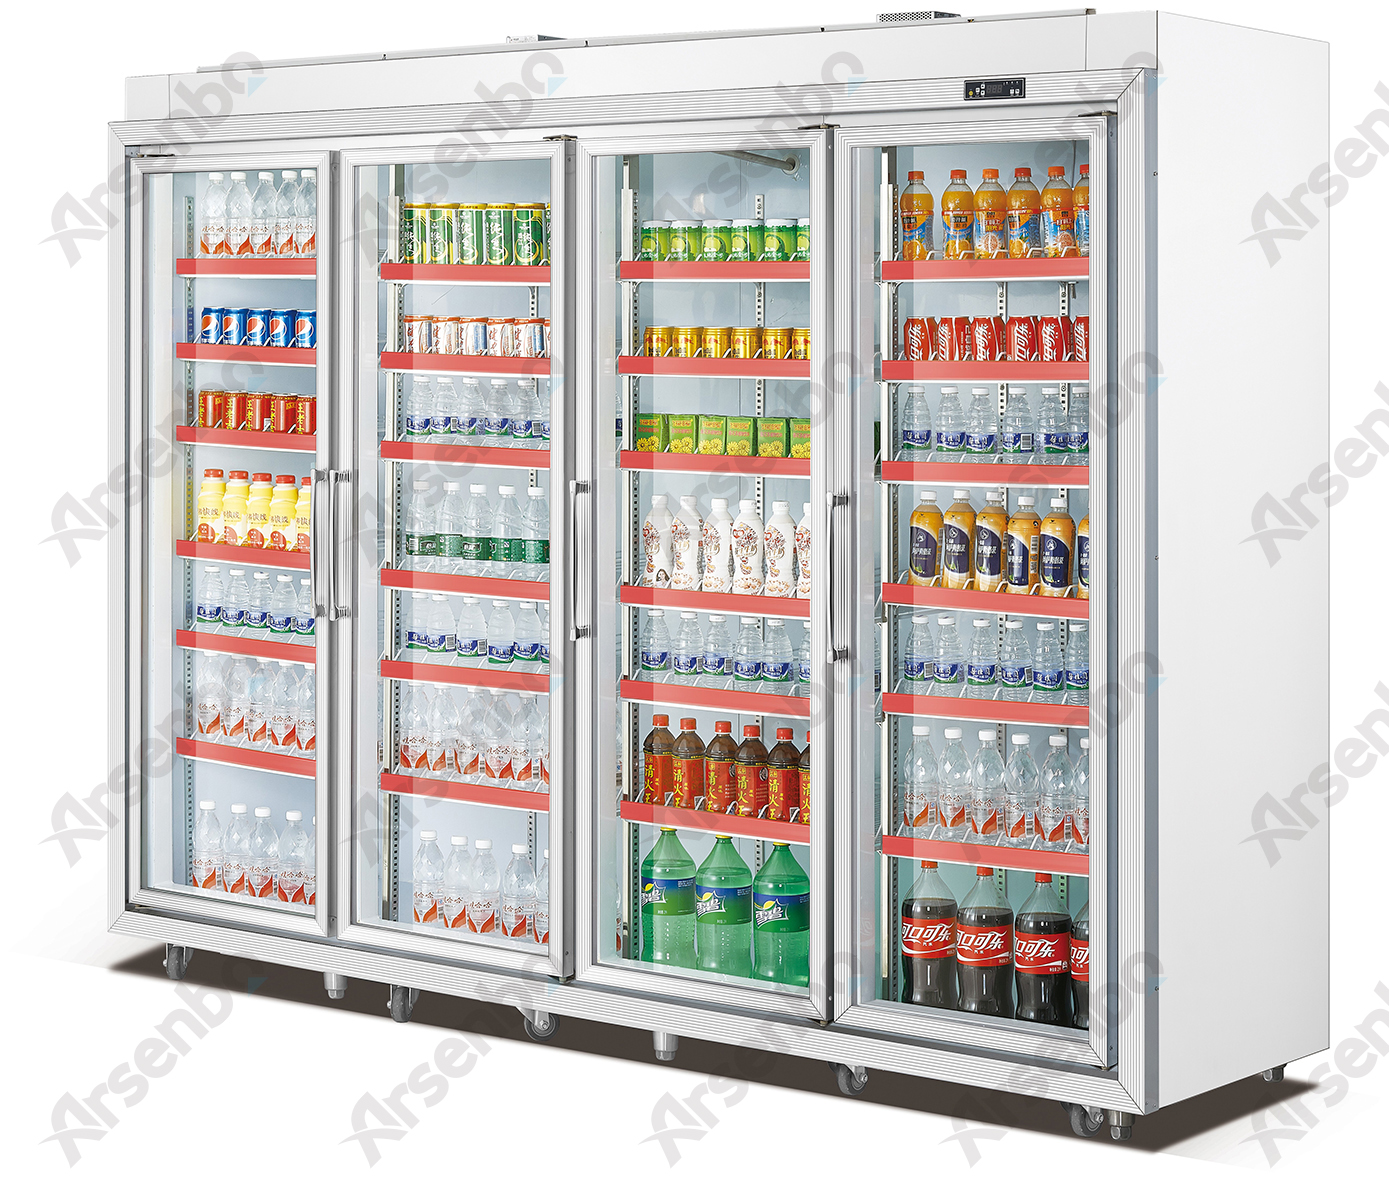 供应超市便利店可口可乐饮料展示冰冷柜图片